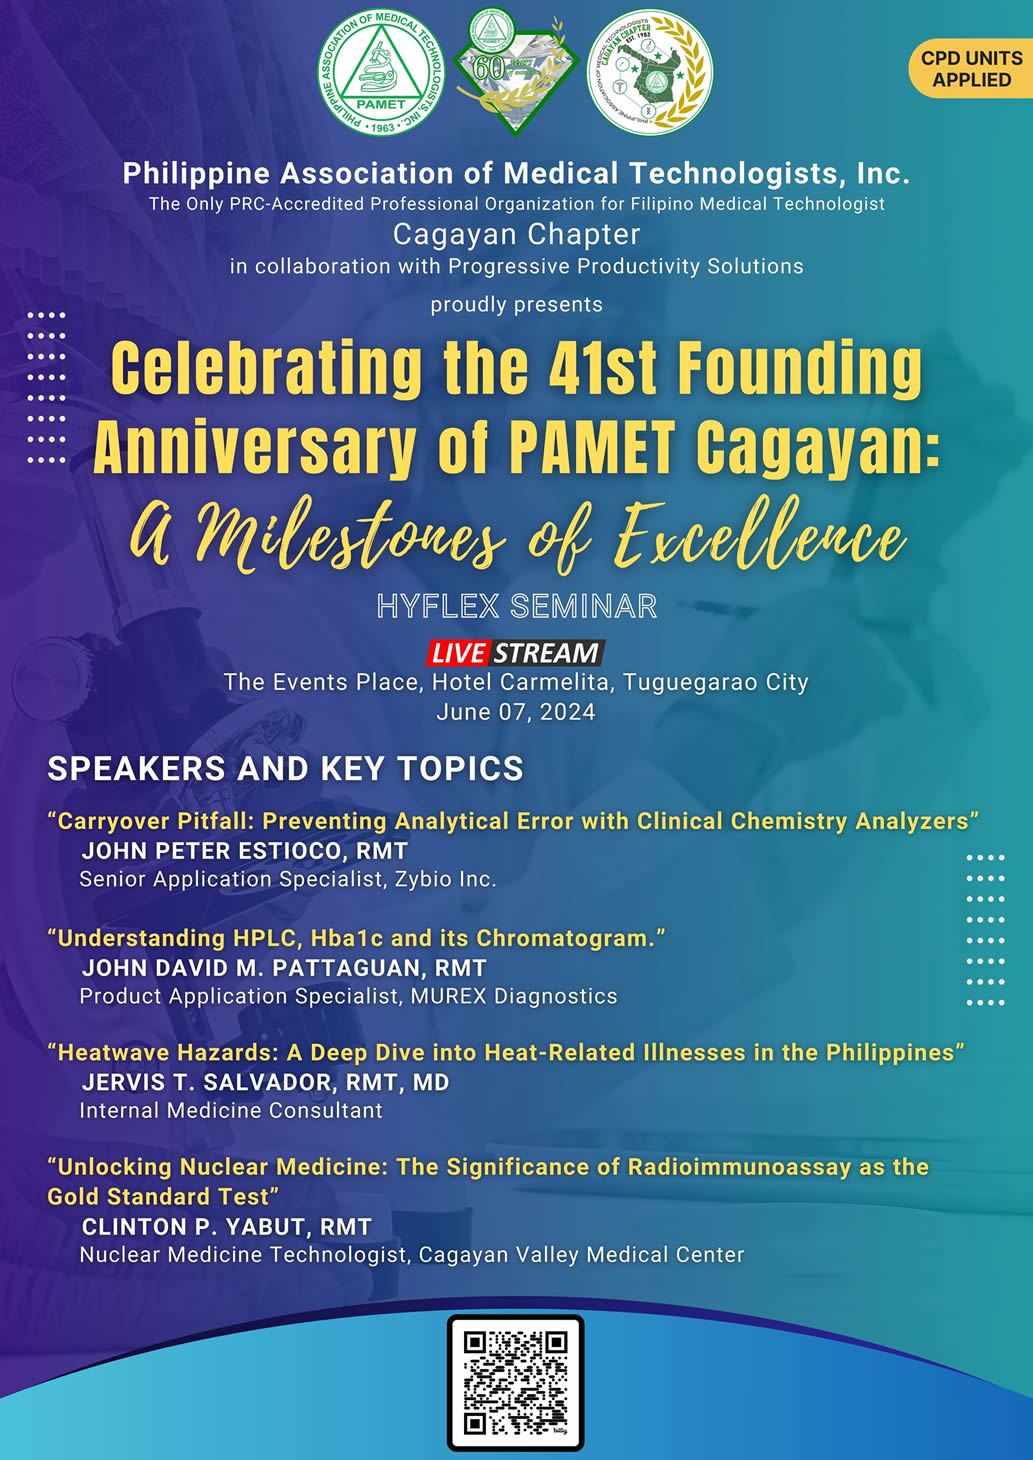 PAMET Cagayan